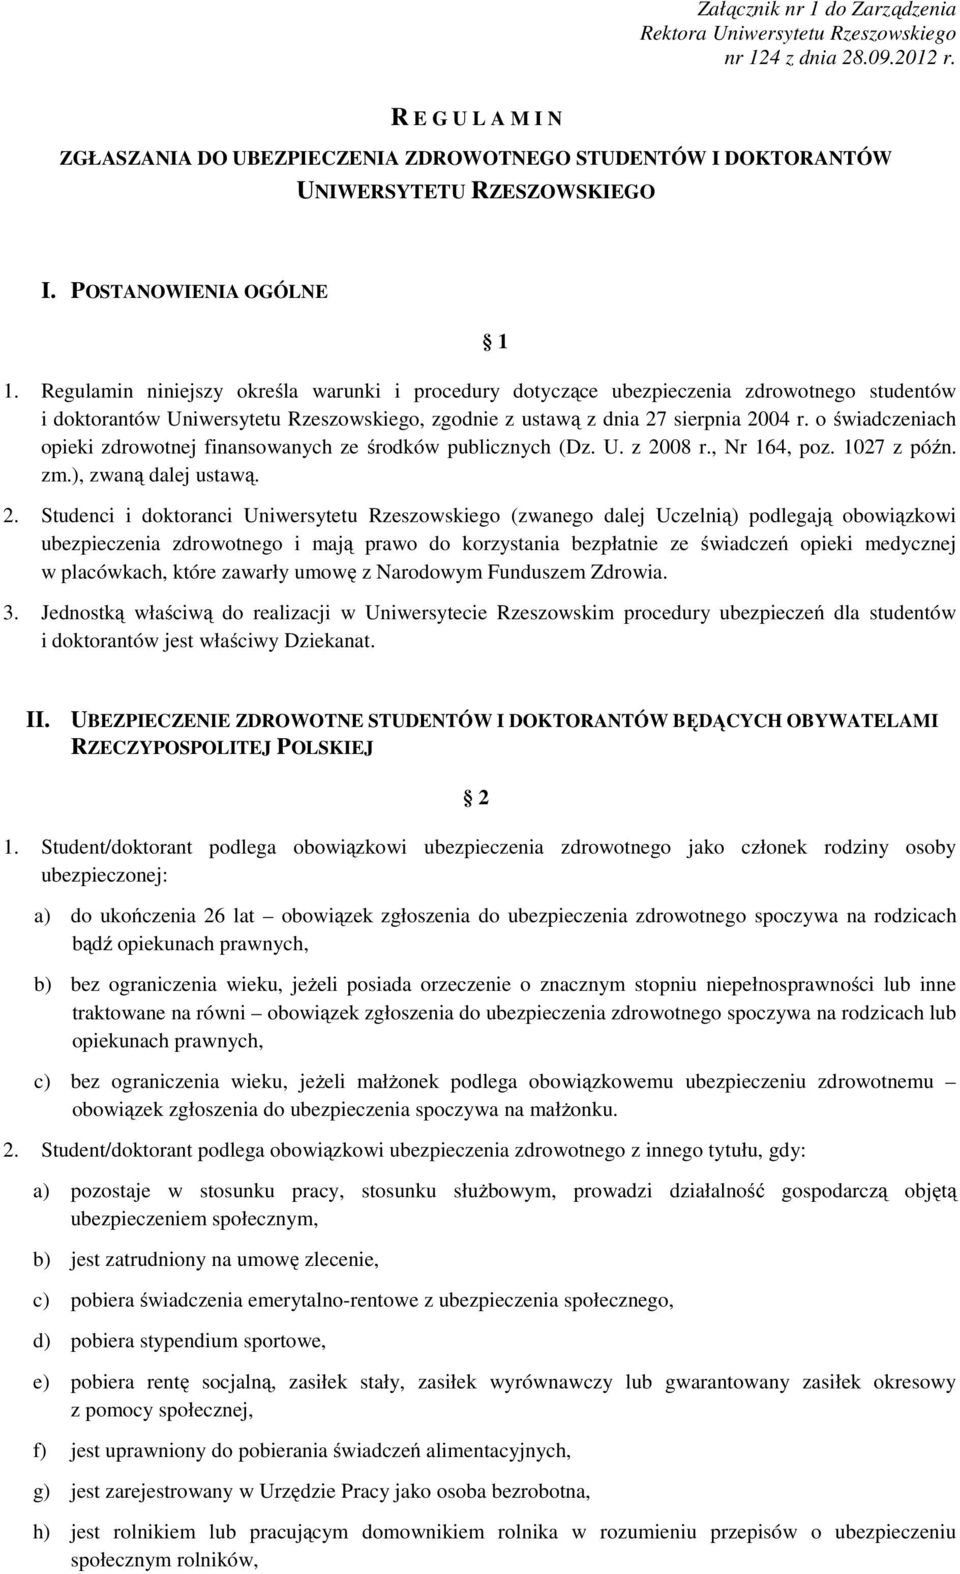 Regulamin niniejszy określa warunki i procedury dotyczące ubezpieczenia zdrowotnego studentów i doktorantów Uniwersytetu Rzeszowskiego, zgodnie z ustawą z dnia 27 sierpnia 2004 r.